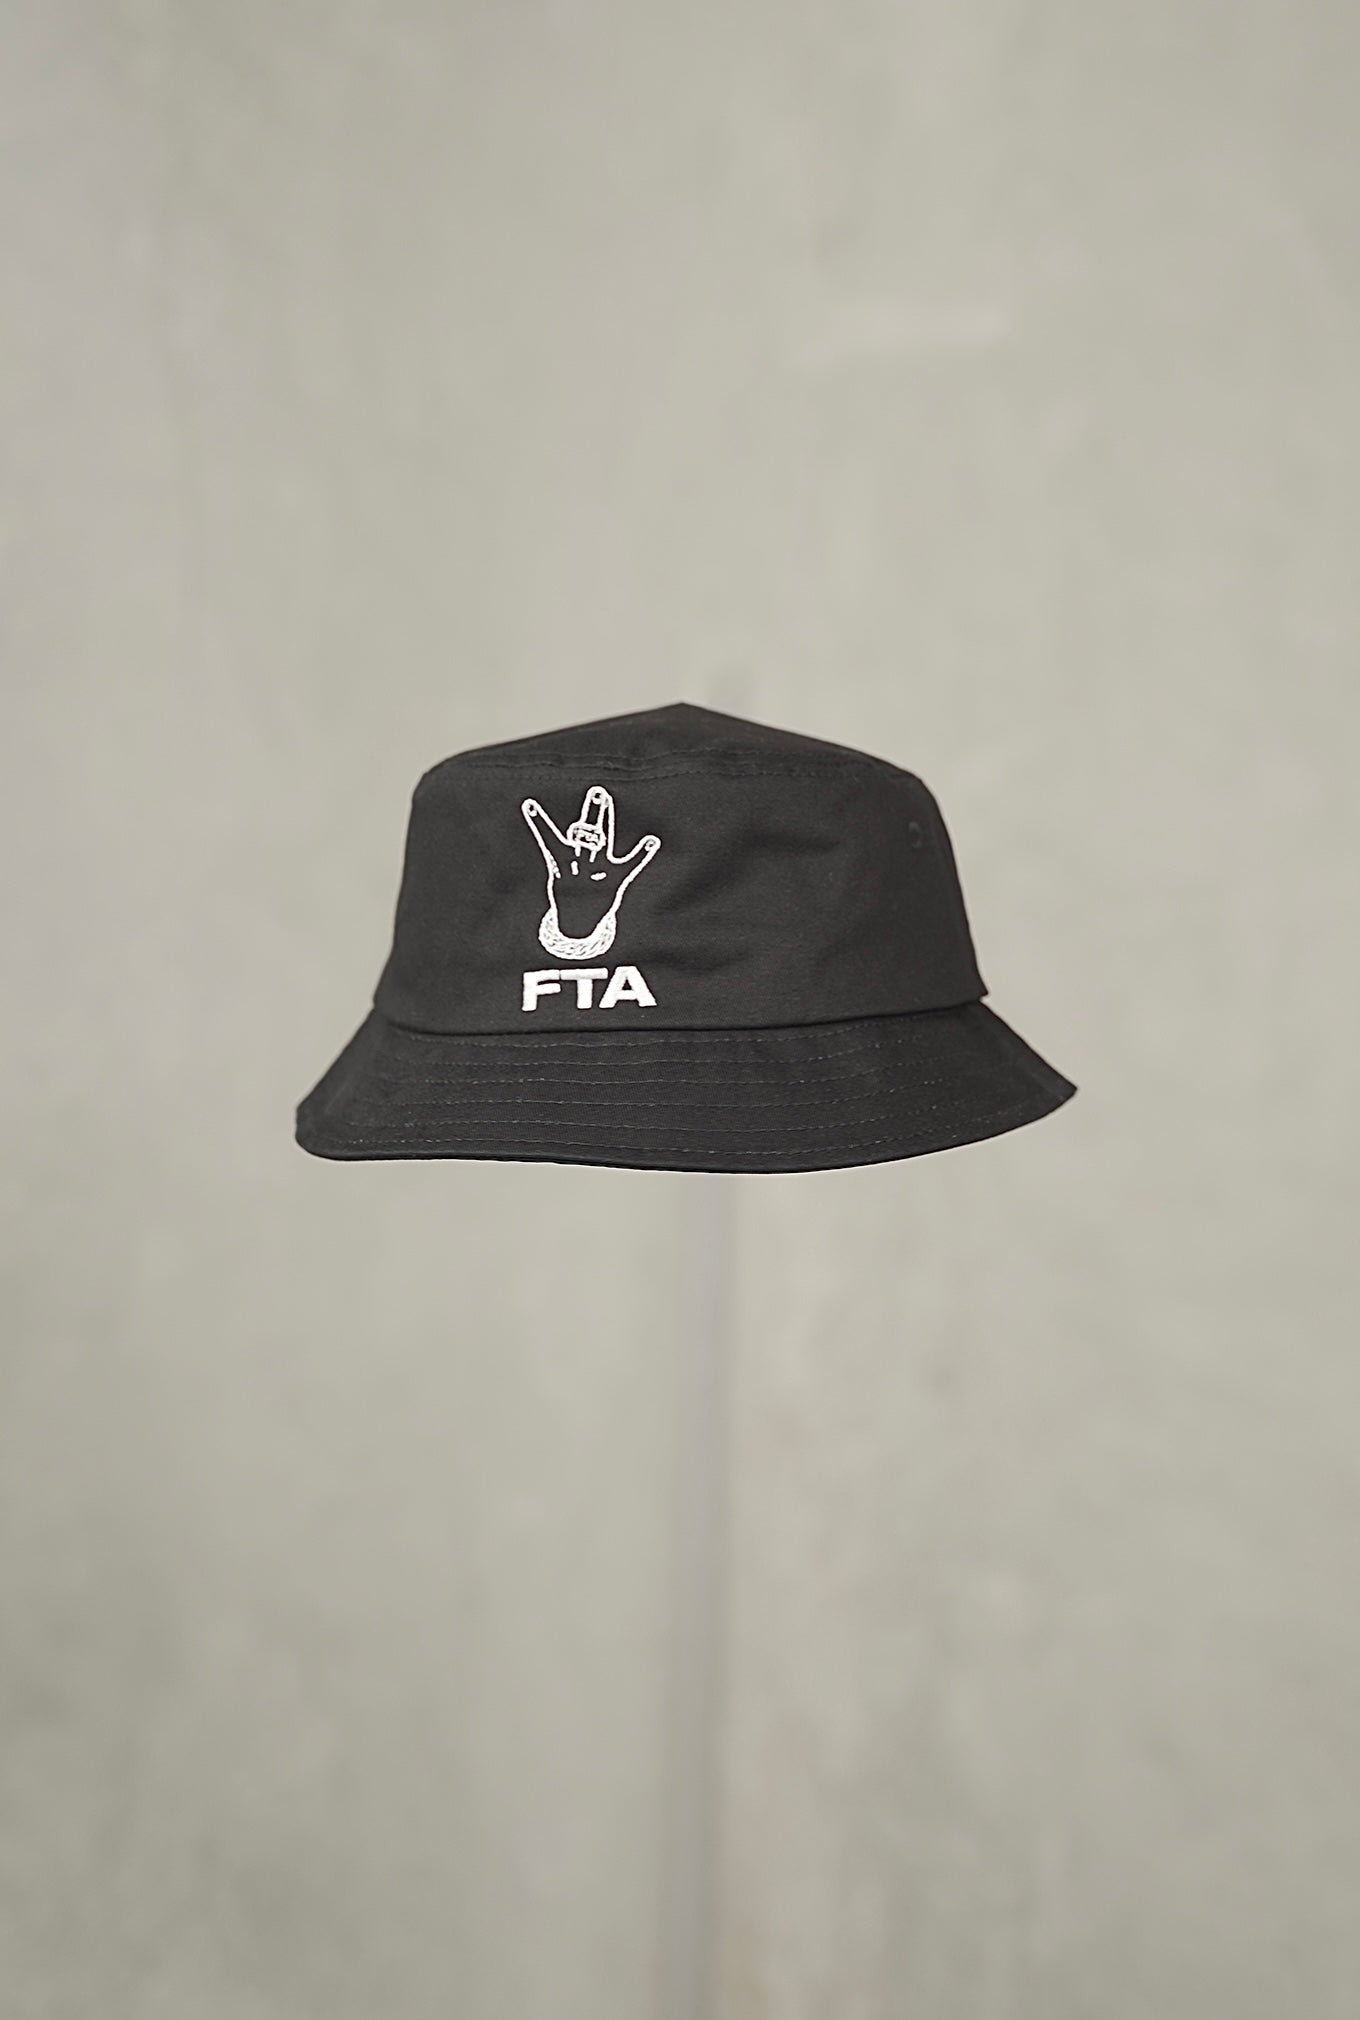 FTA x BamBam Tuivasa Bucket Hat